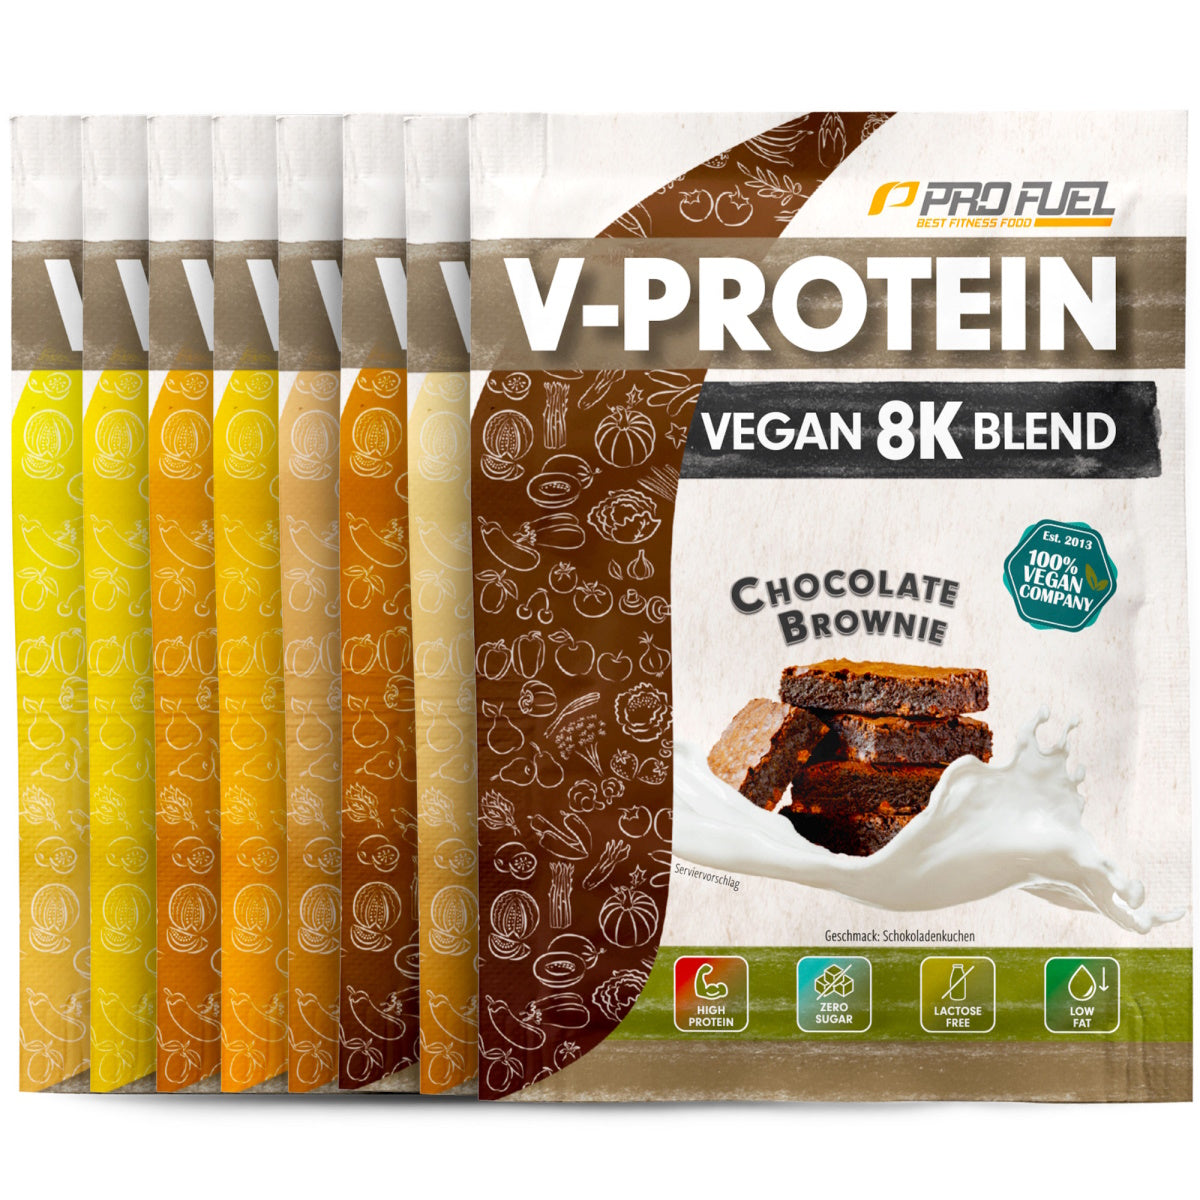 PROFuel - V-Protein Vegan 8K Blend - 100% Vegan Protein - Smagsprøve 30 g- 5 smagsvarianter